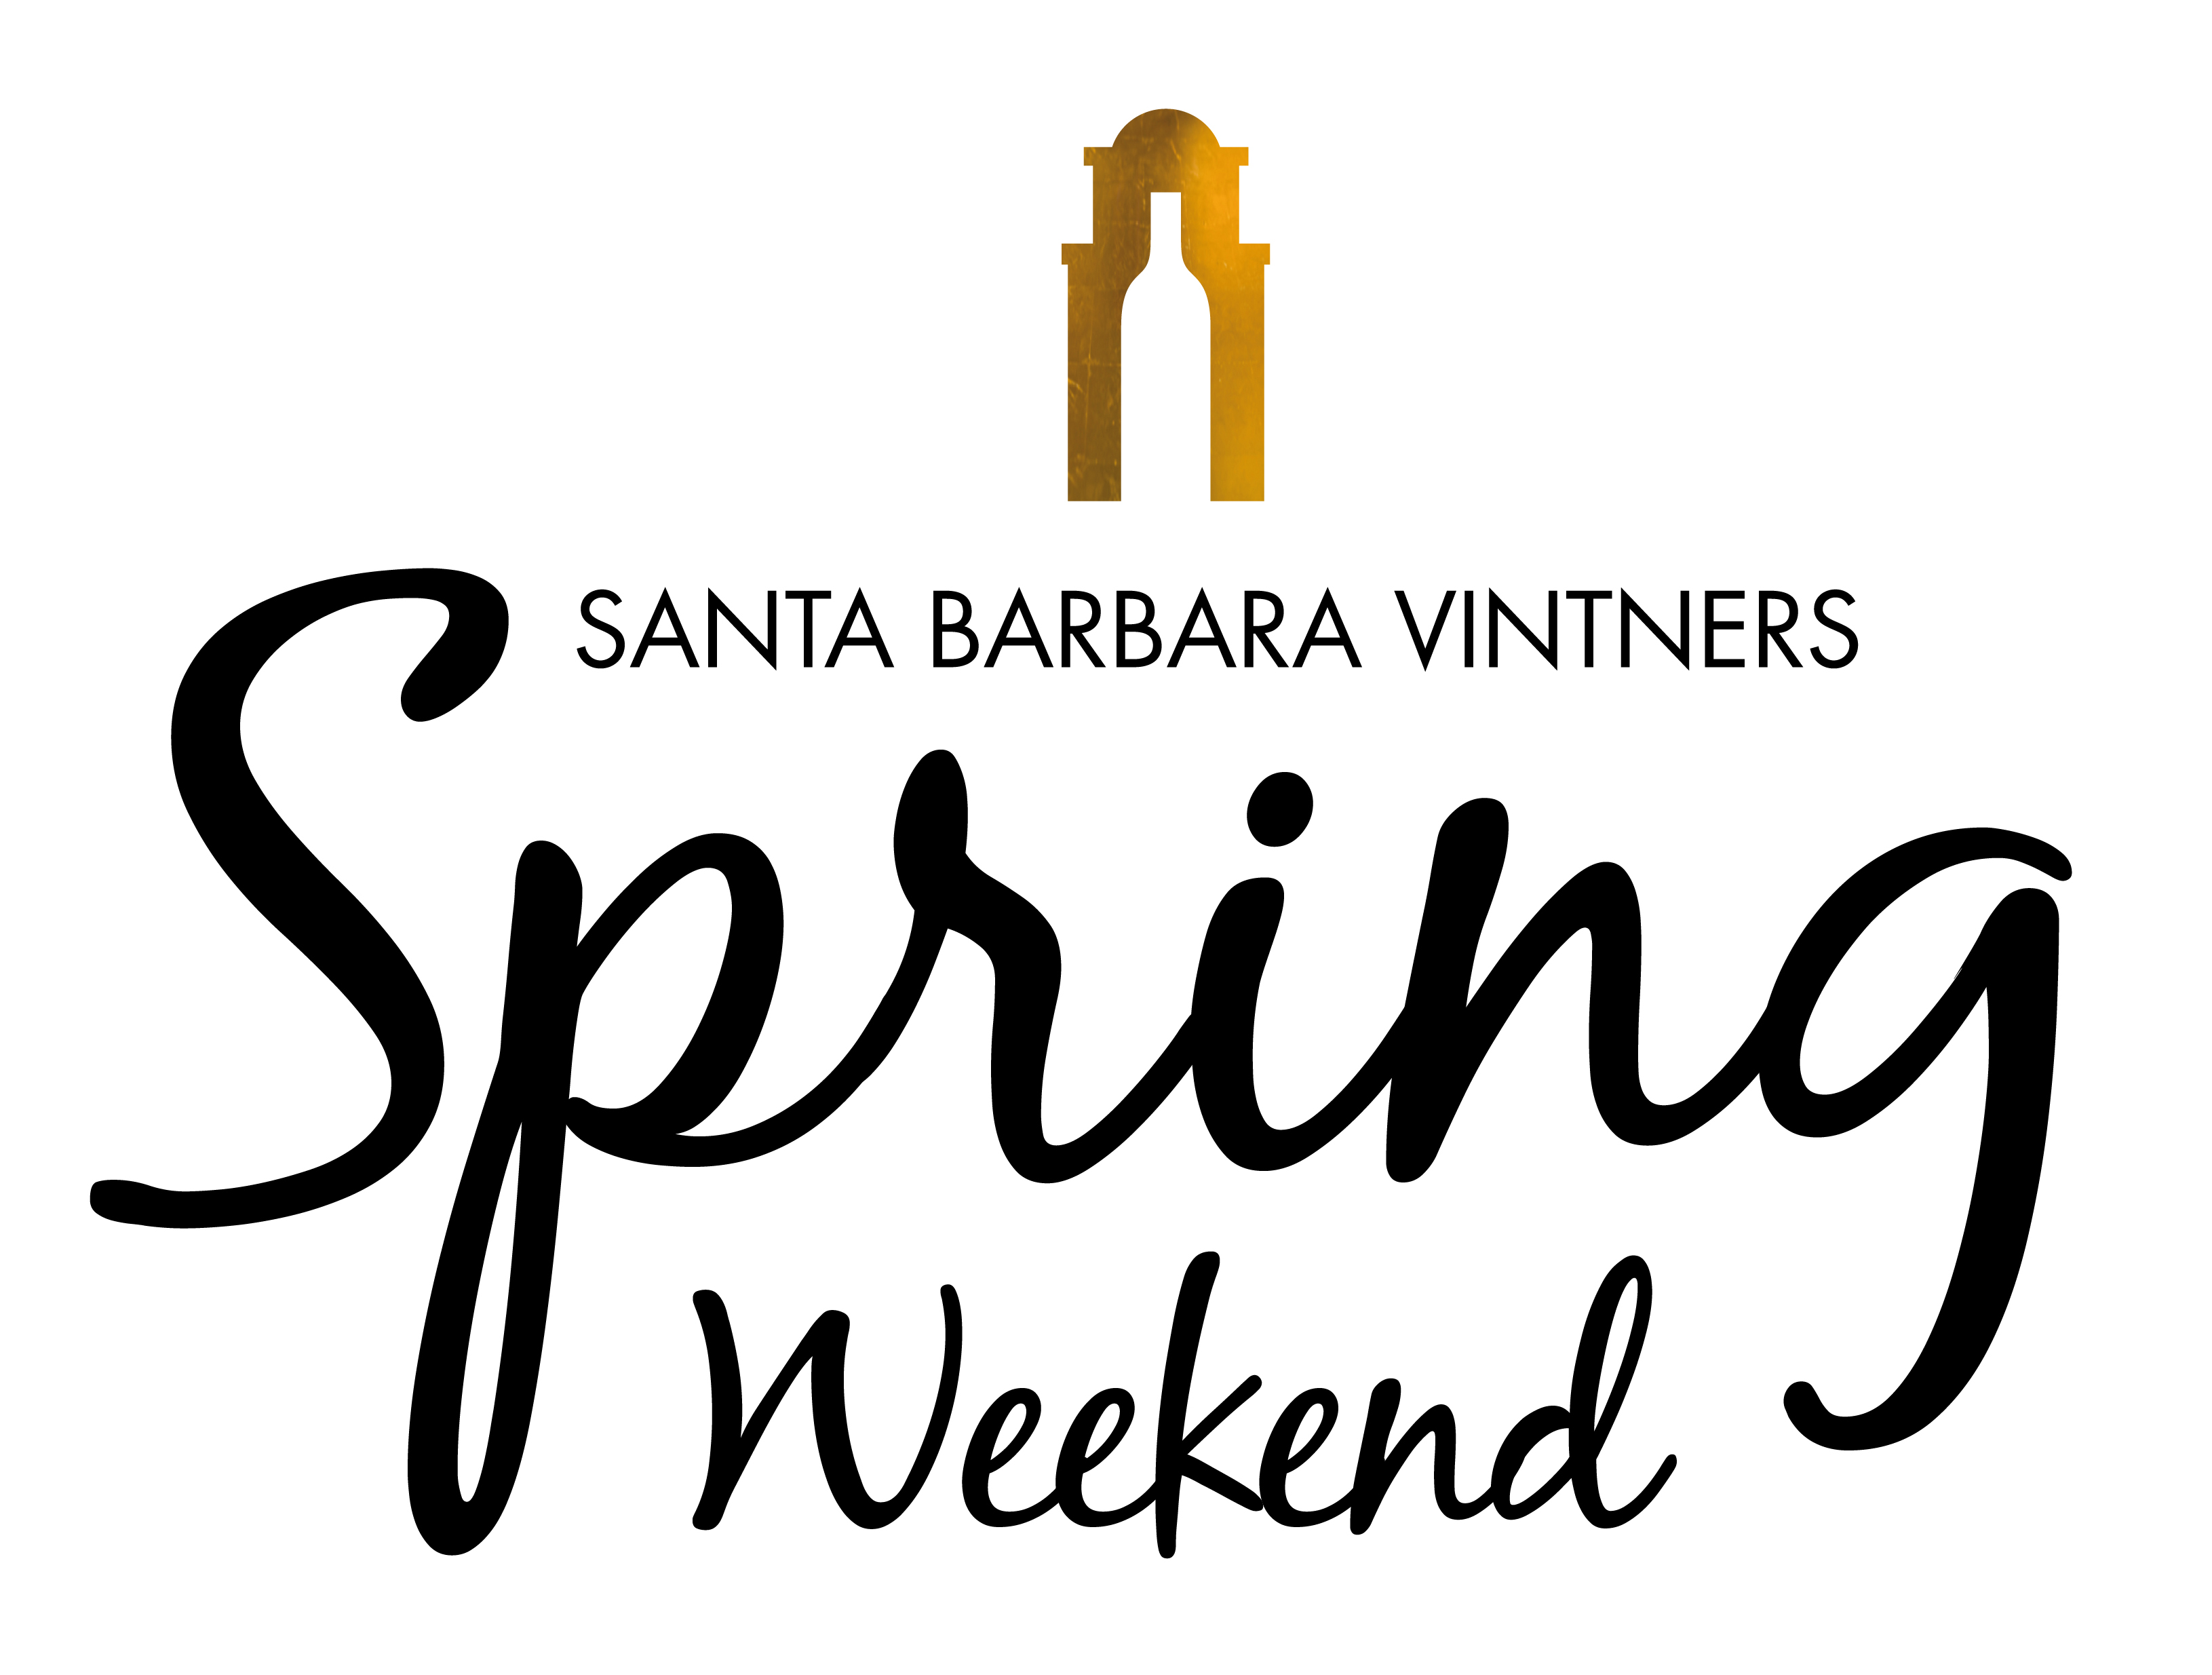 Santa Barbara Vintners Spring Weekend Lures Food Fans With Three